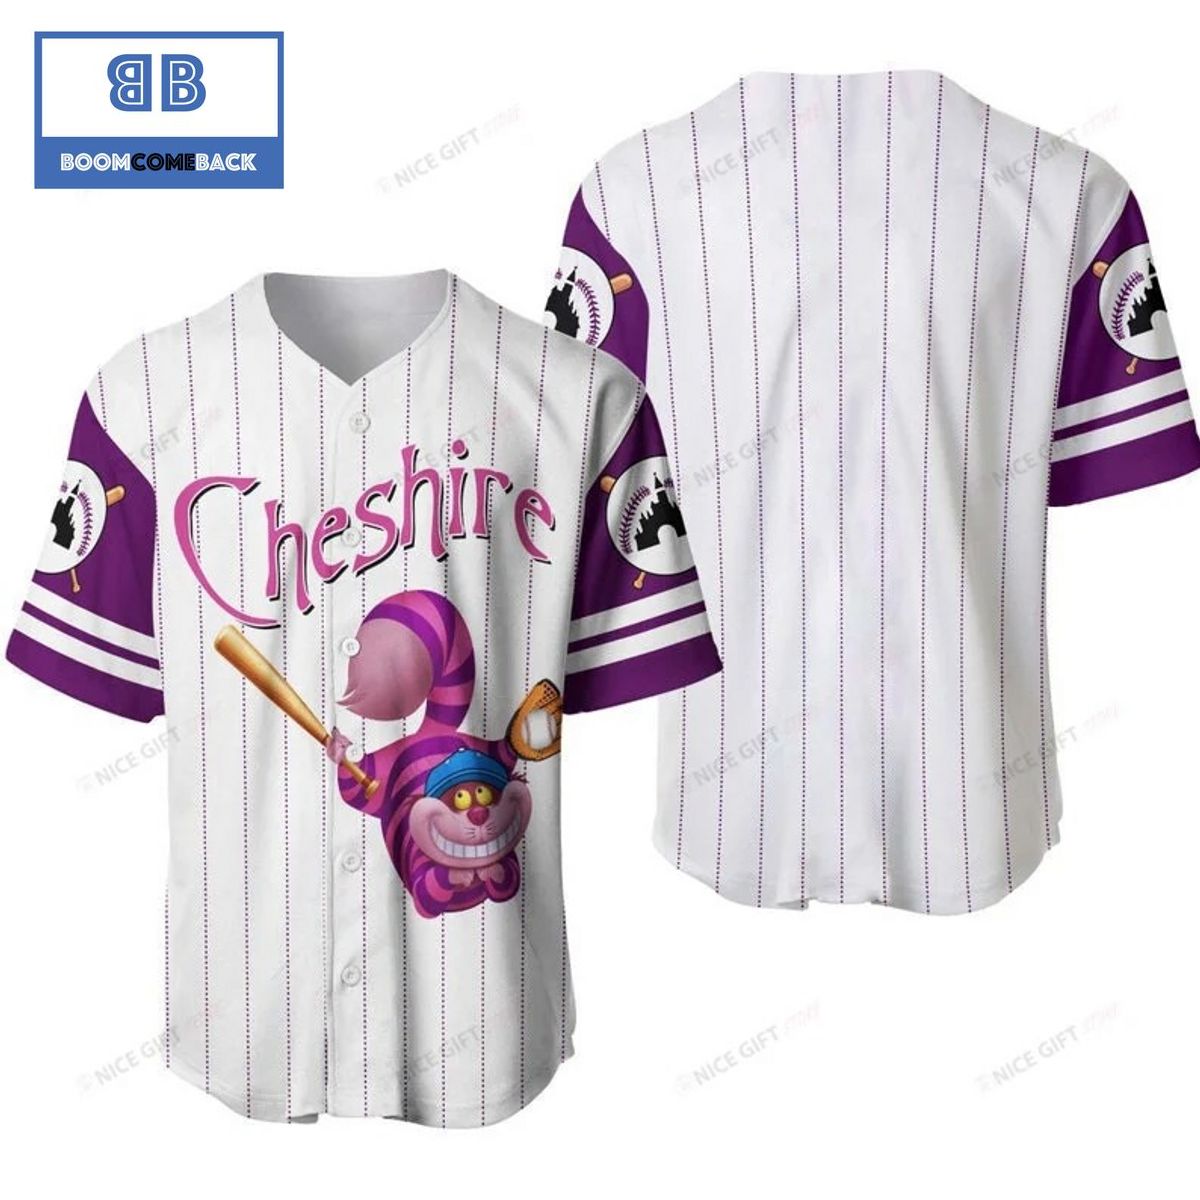 Cheshire Cat White Baseball Jersey